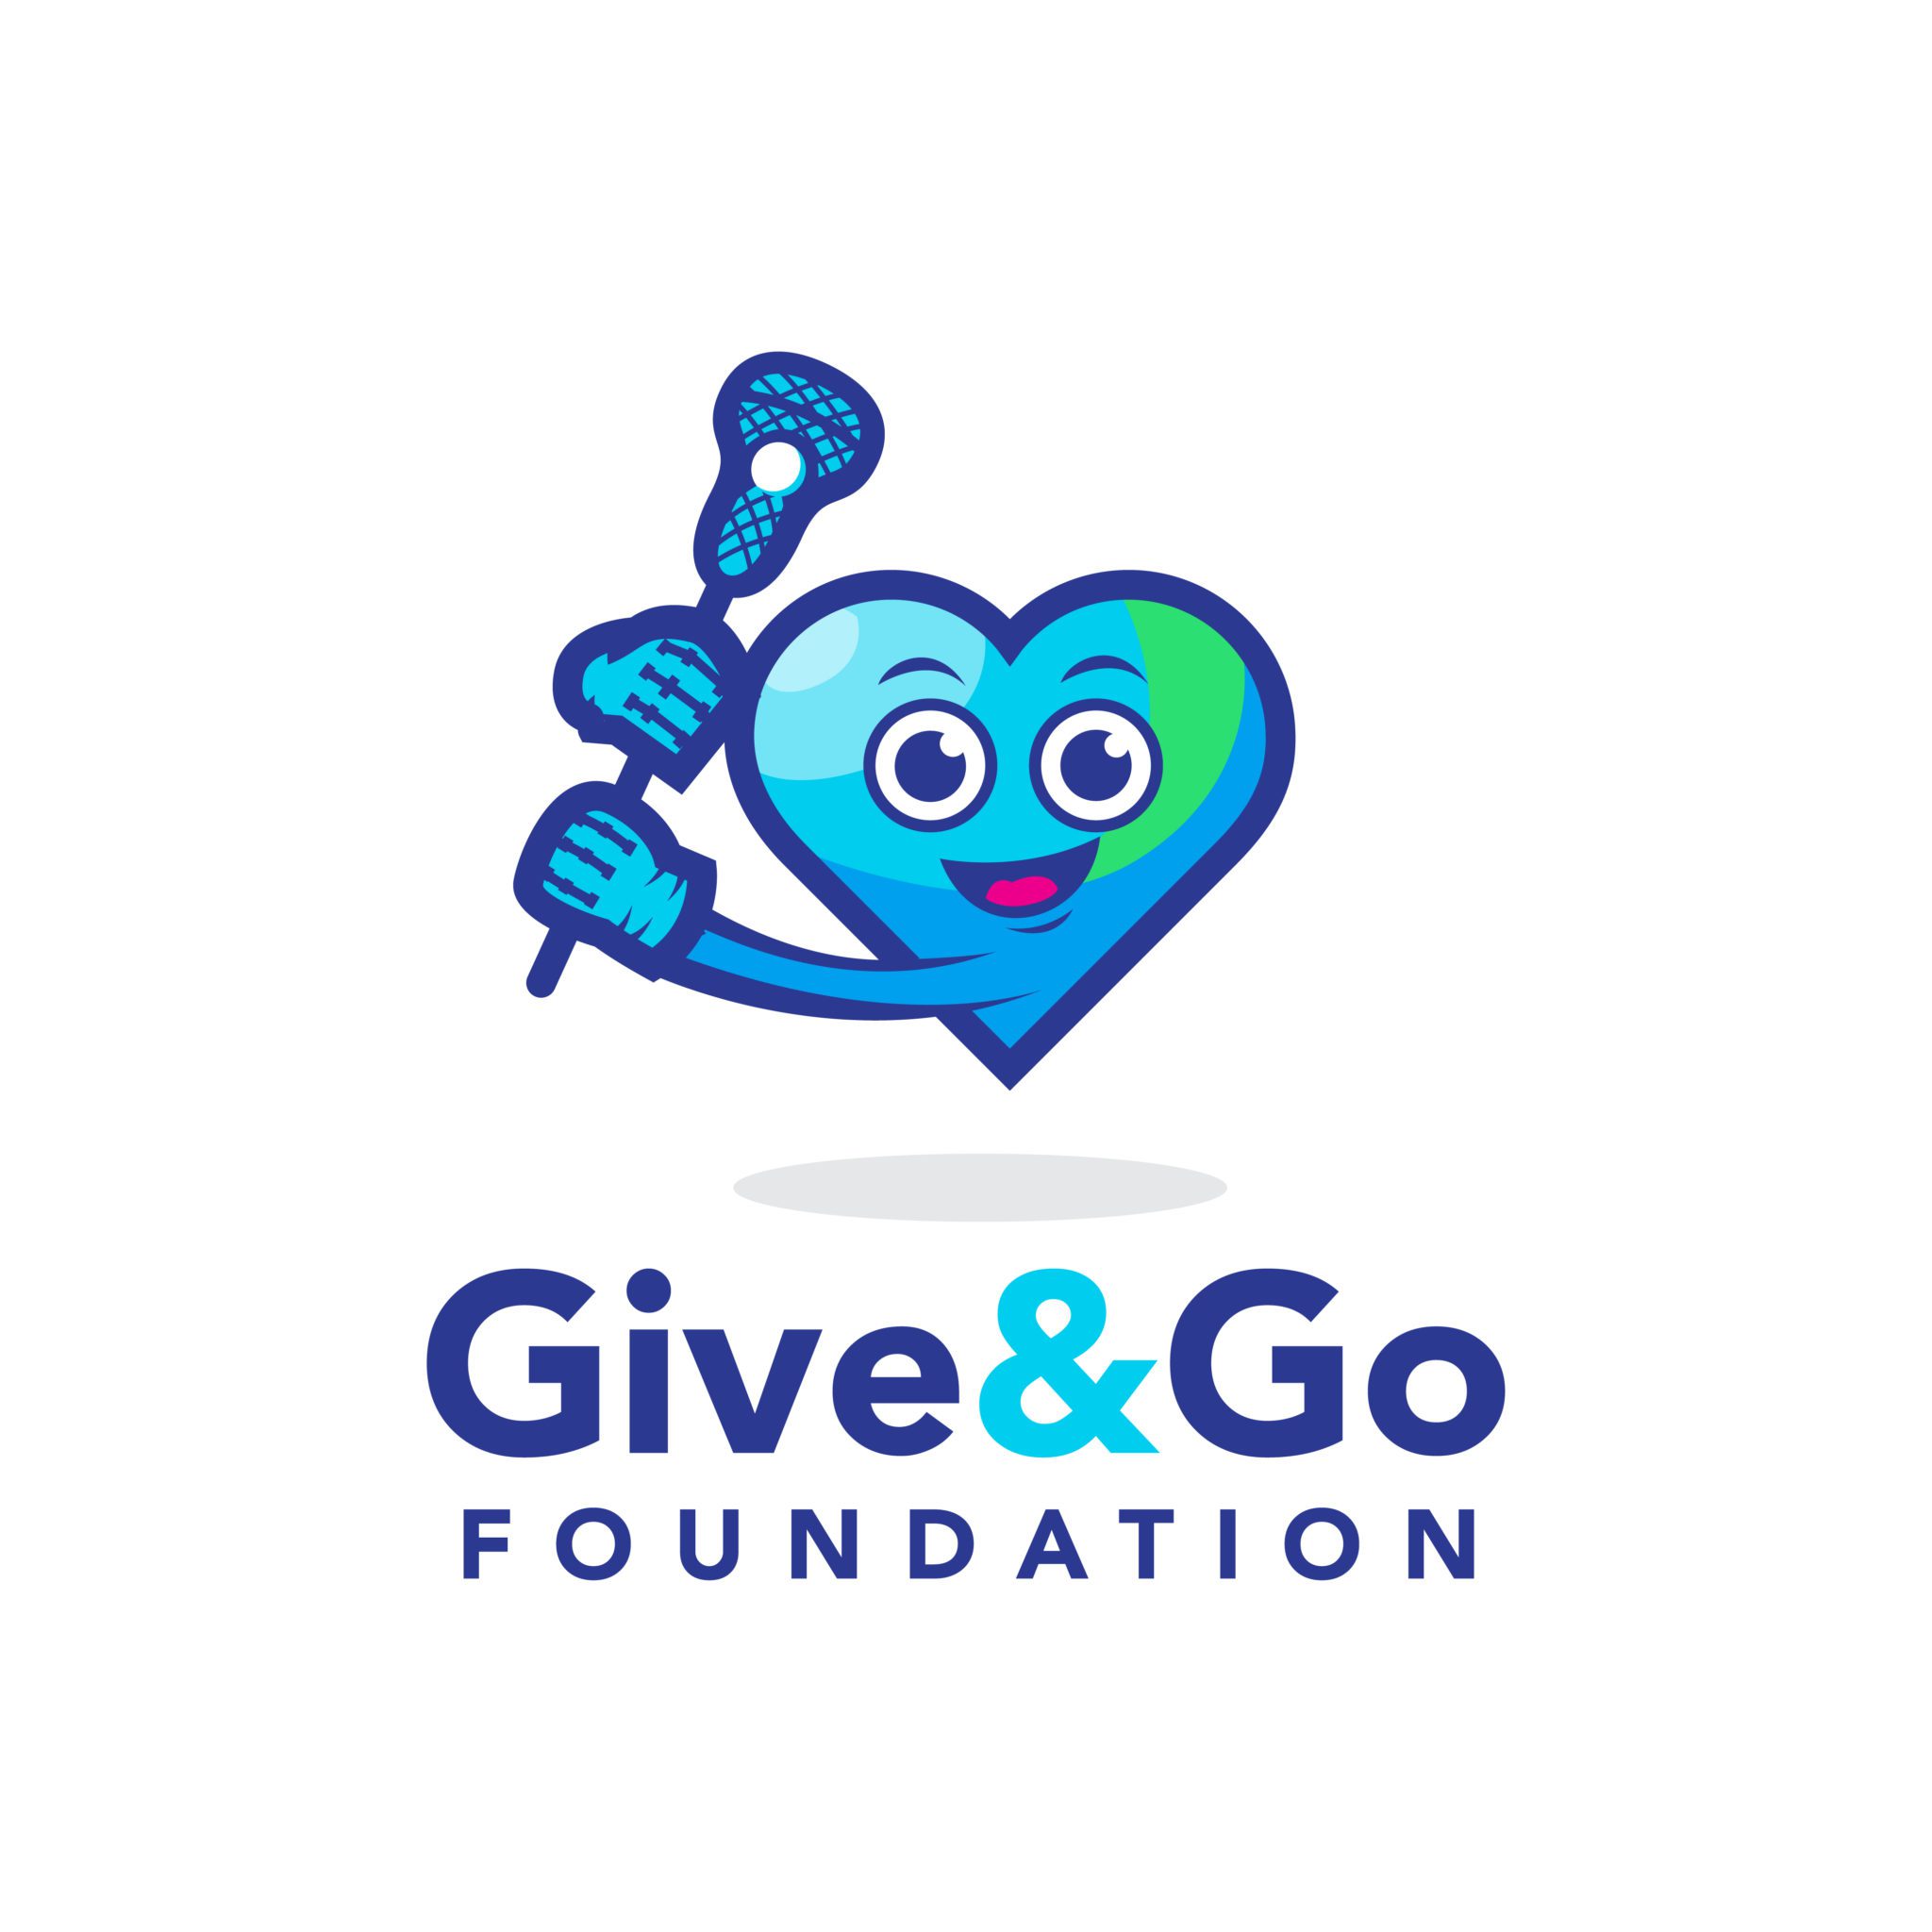 https://givegofund.com/wp-content/uploads/2022/05/Give-and-Go-Logo-01-scaled.jpg